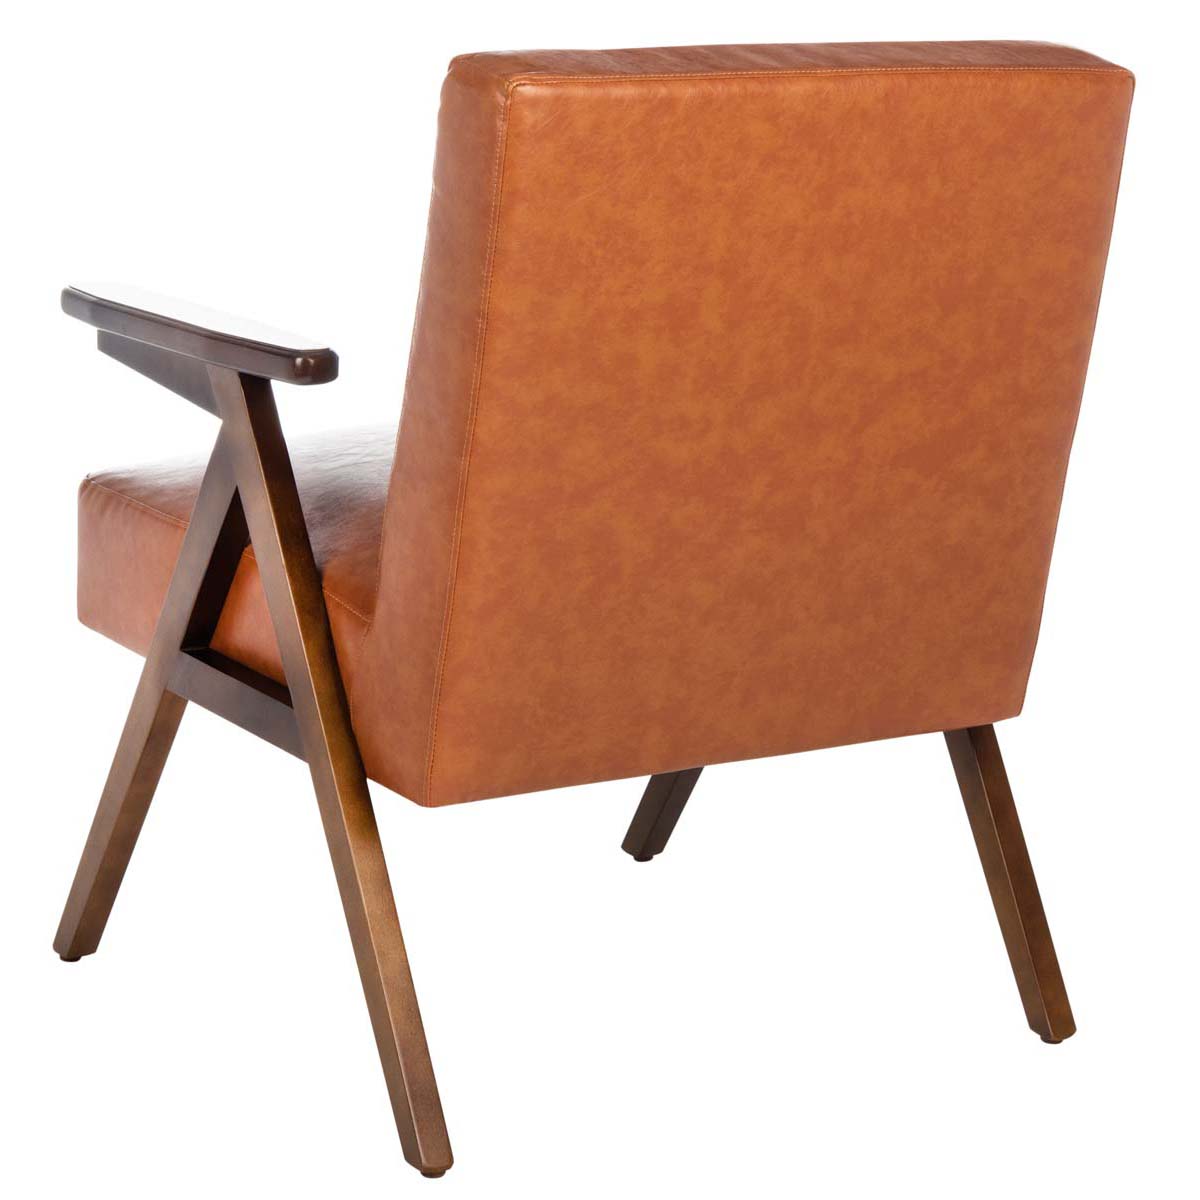 Safavieh Emyr Arm Chair , ACH4007